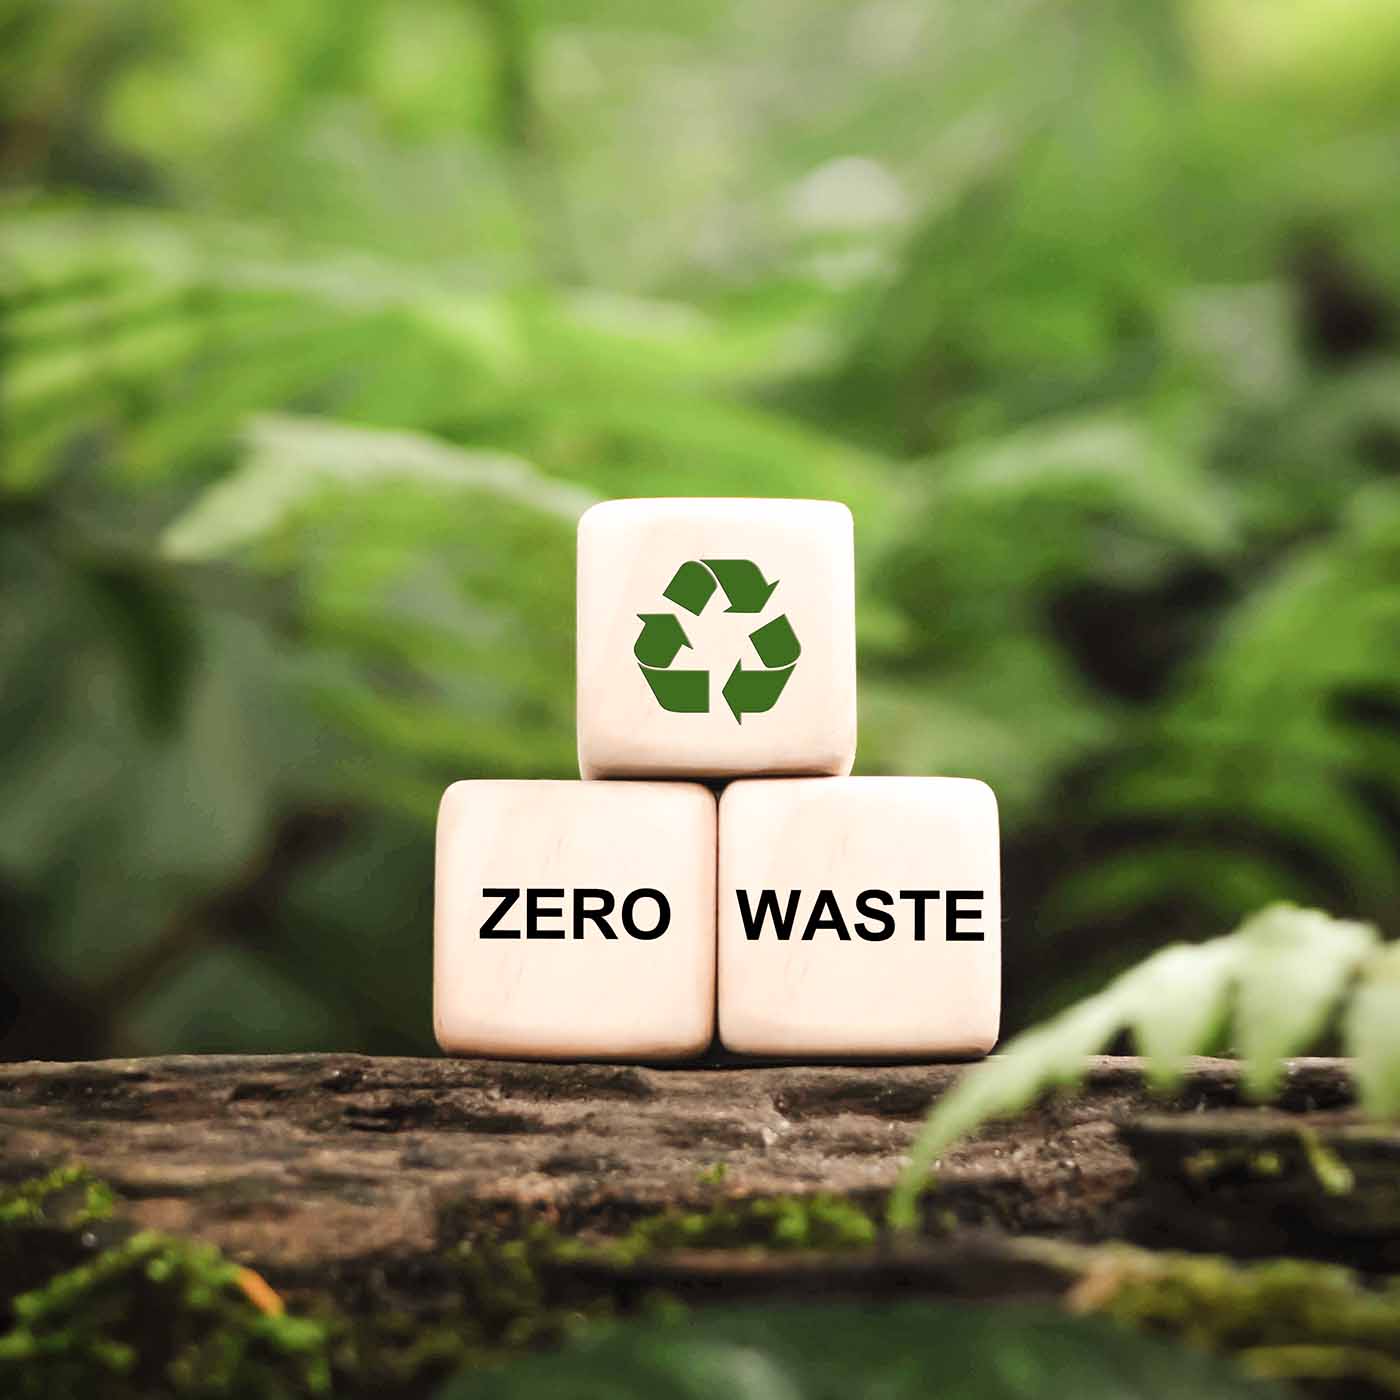 Dadi con simbolo del riciclo e 'zero waste' - Il nostro impegno per l'ambiente con pratiche sostenibili su Beliamo.com